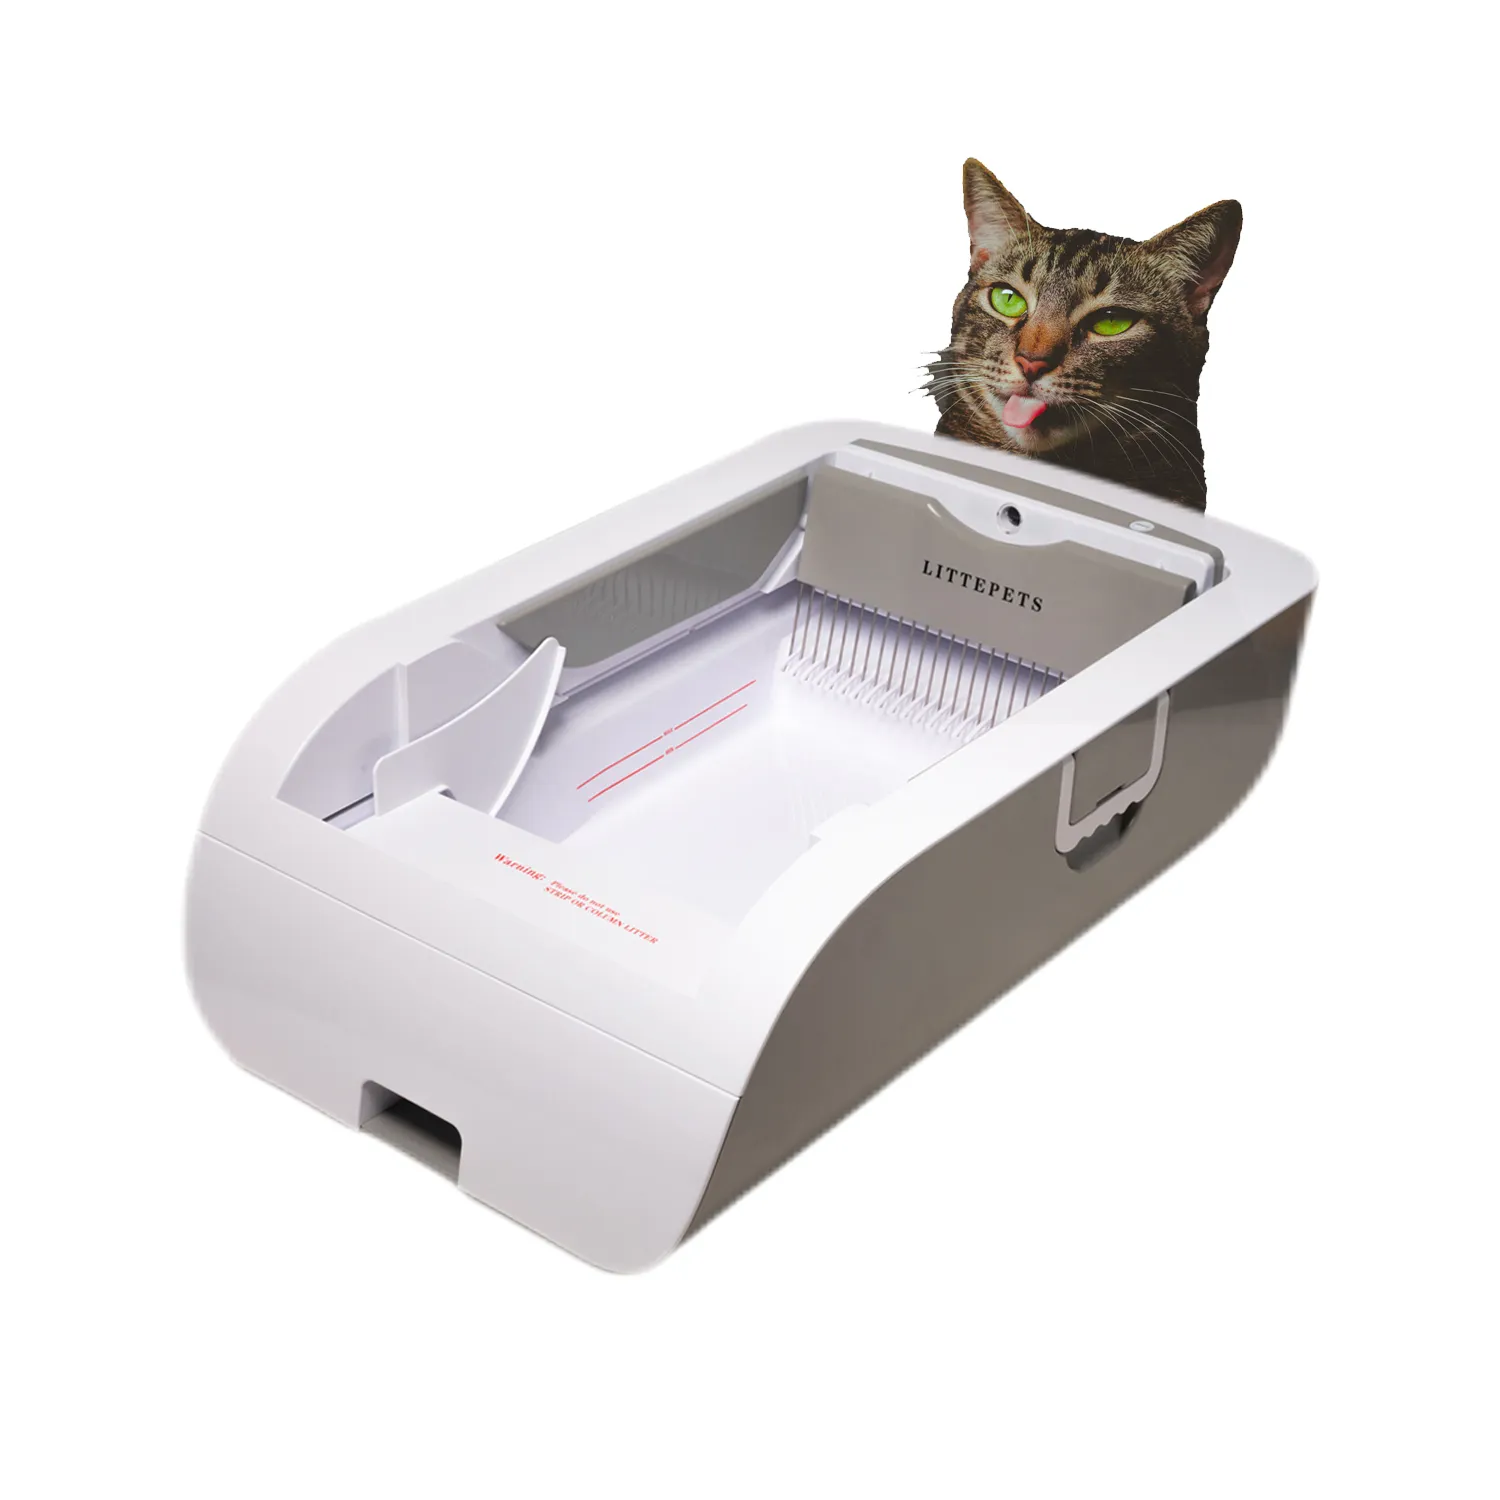 Автоматический самоочищающийся кошачий наполнитель, умный туалет для кошек, тренировочный комплект, лоток для домашнего туалета, лоток для наполнителя с защитой от брызг, Arenero Gato Cerrado